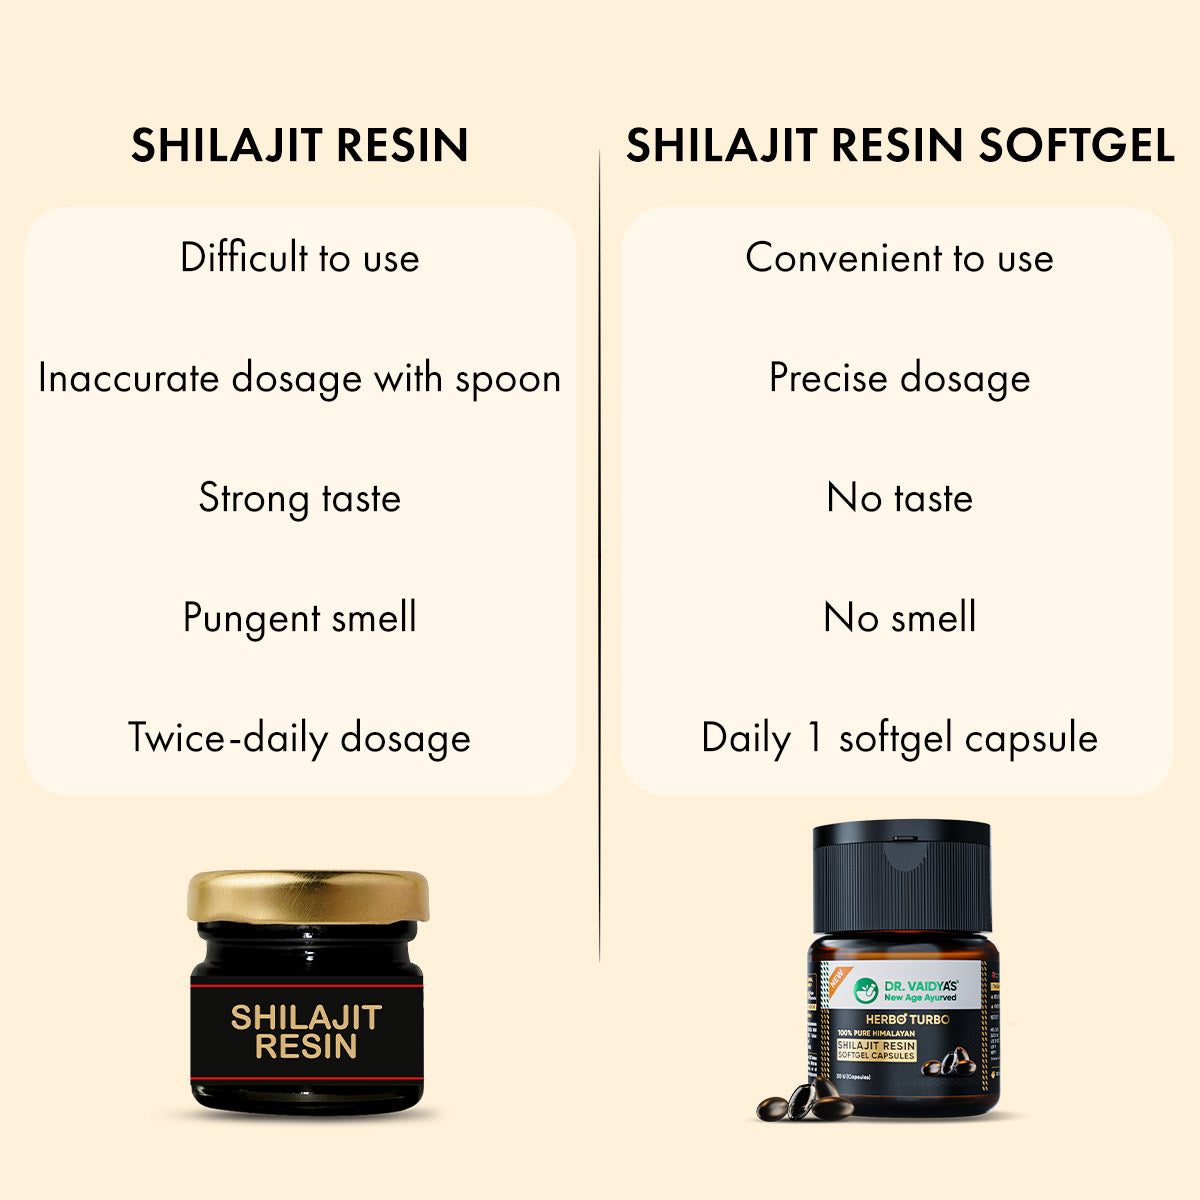 Herbo24Turbo Shilajit Resin SoftGel Capsules: 100% Effectiveness of Shilajit Resin in Convenience of Softgel Capsules